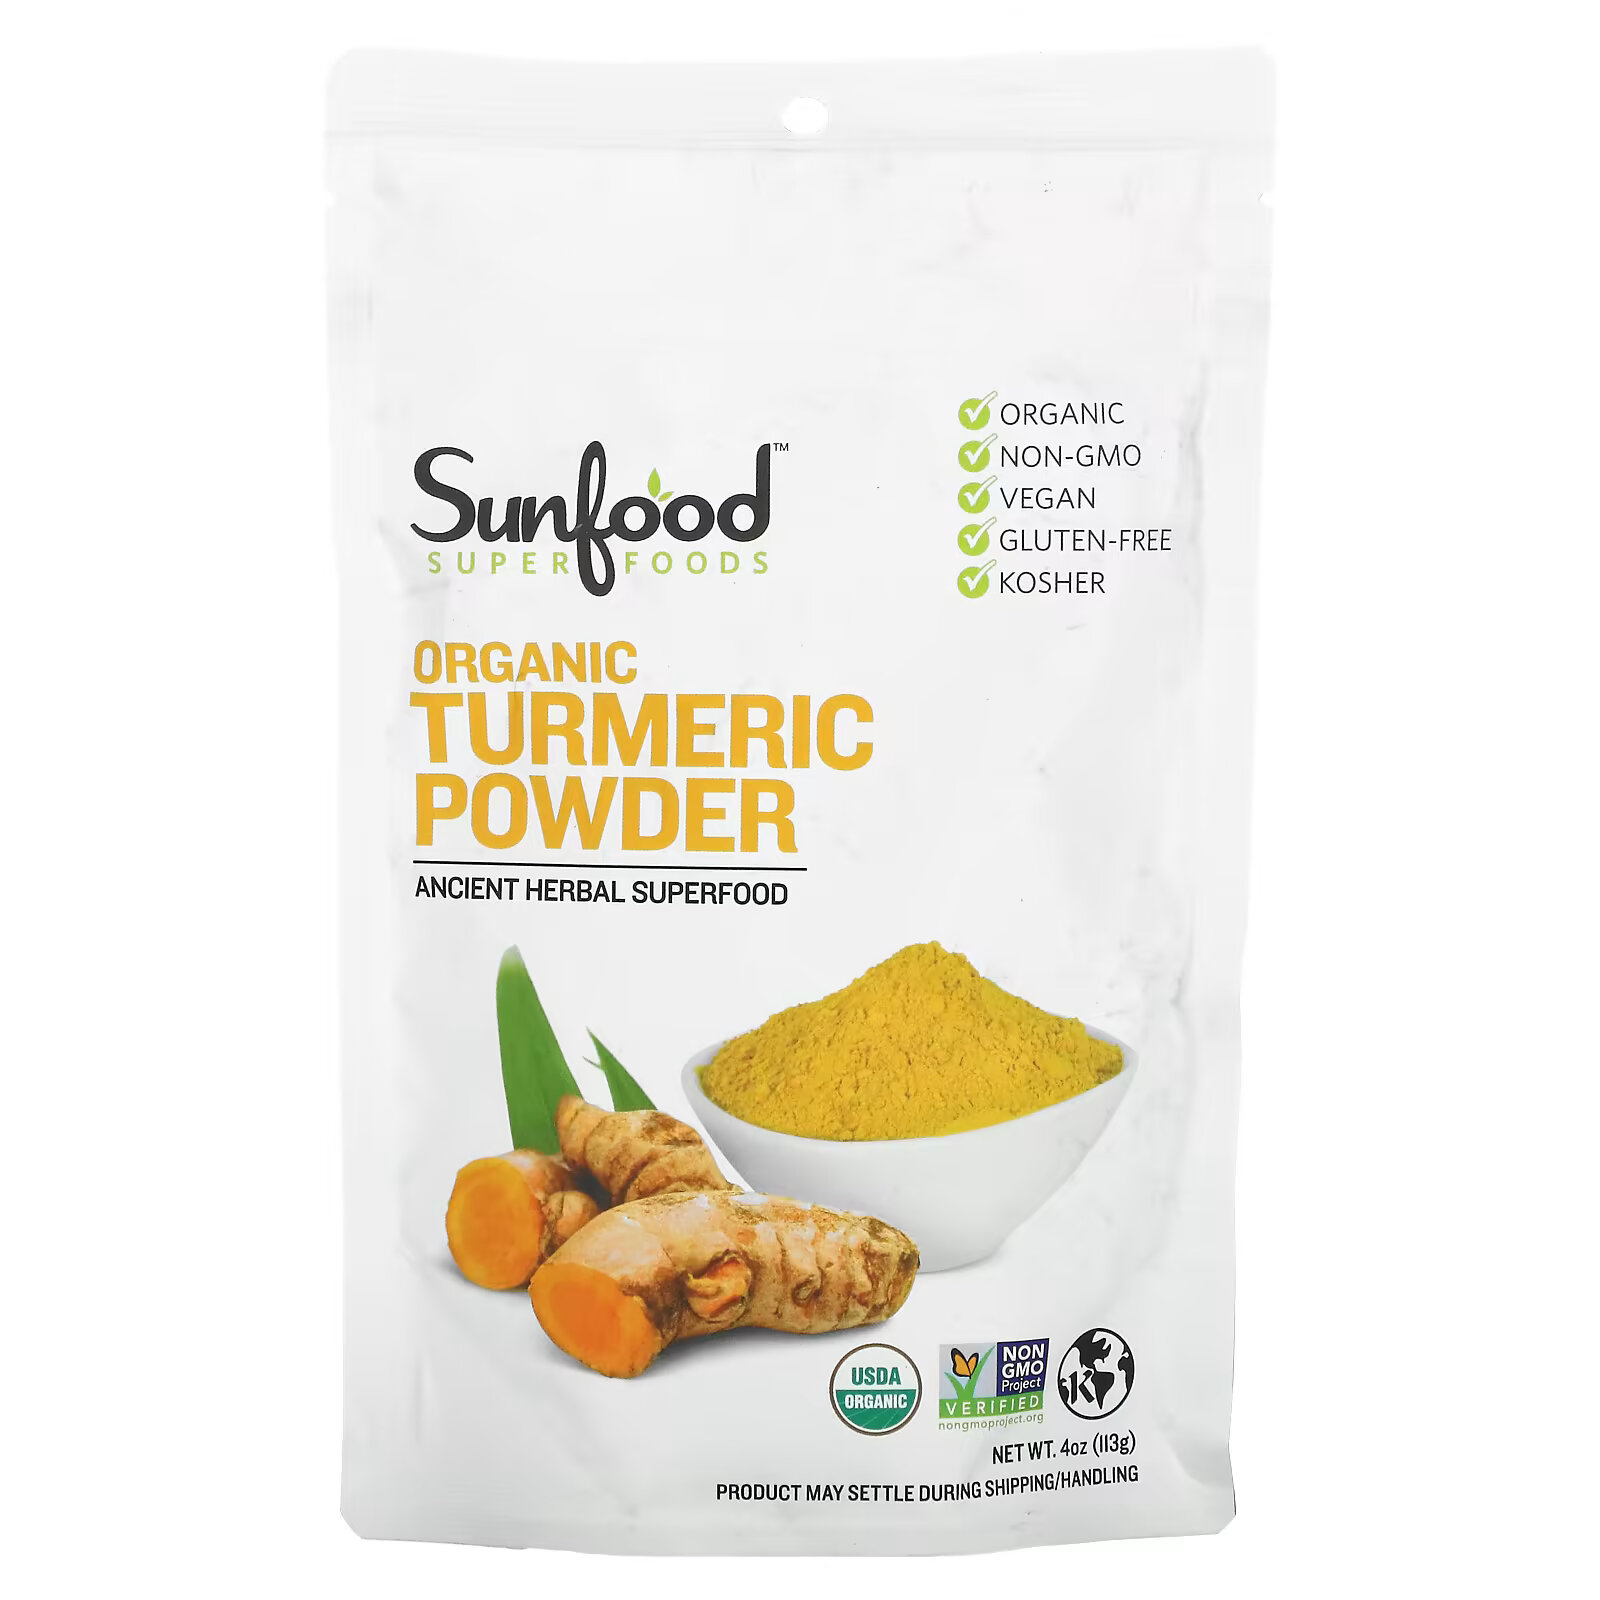 sunfood органические черные семена 113 г 4 унции Sunfood, Органическая куркума в порошке, 113 г (4 унции)